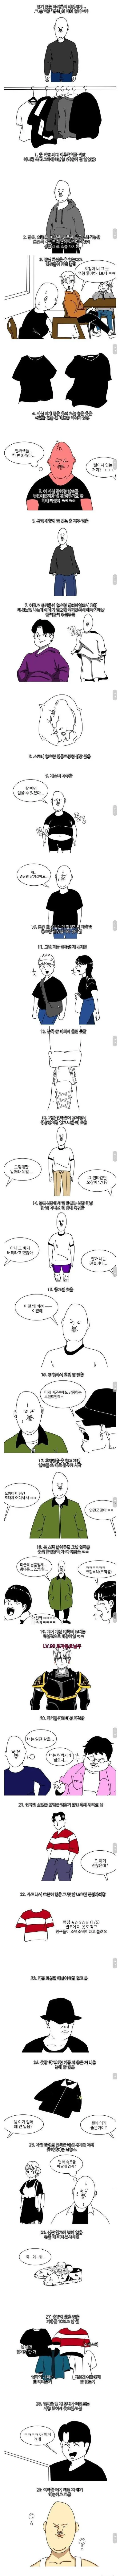 싱글벙글 아싸 패션 특징 | mbong.kr 엠봉